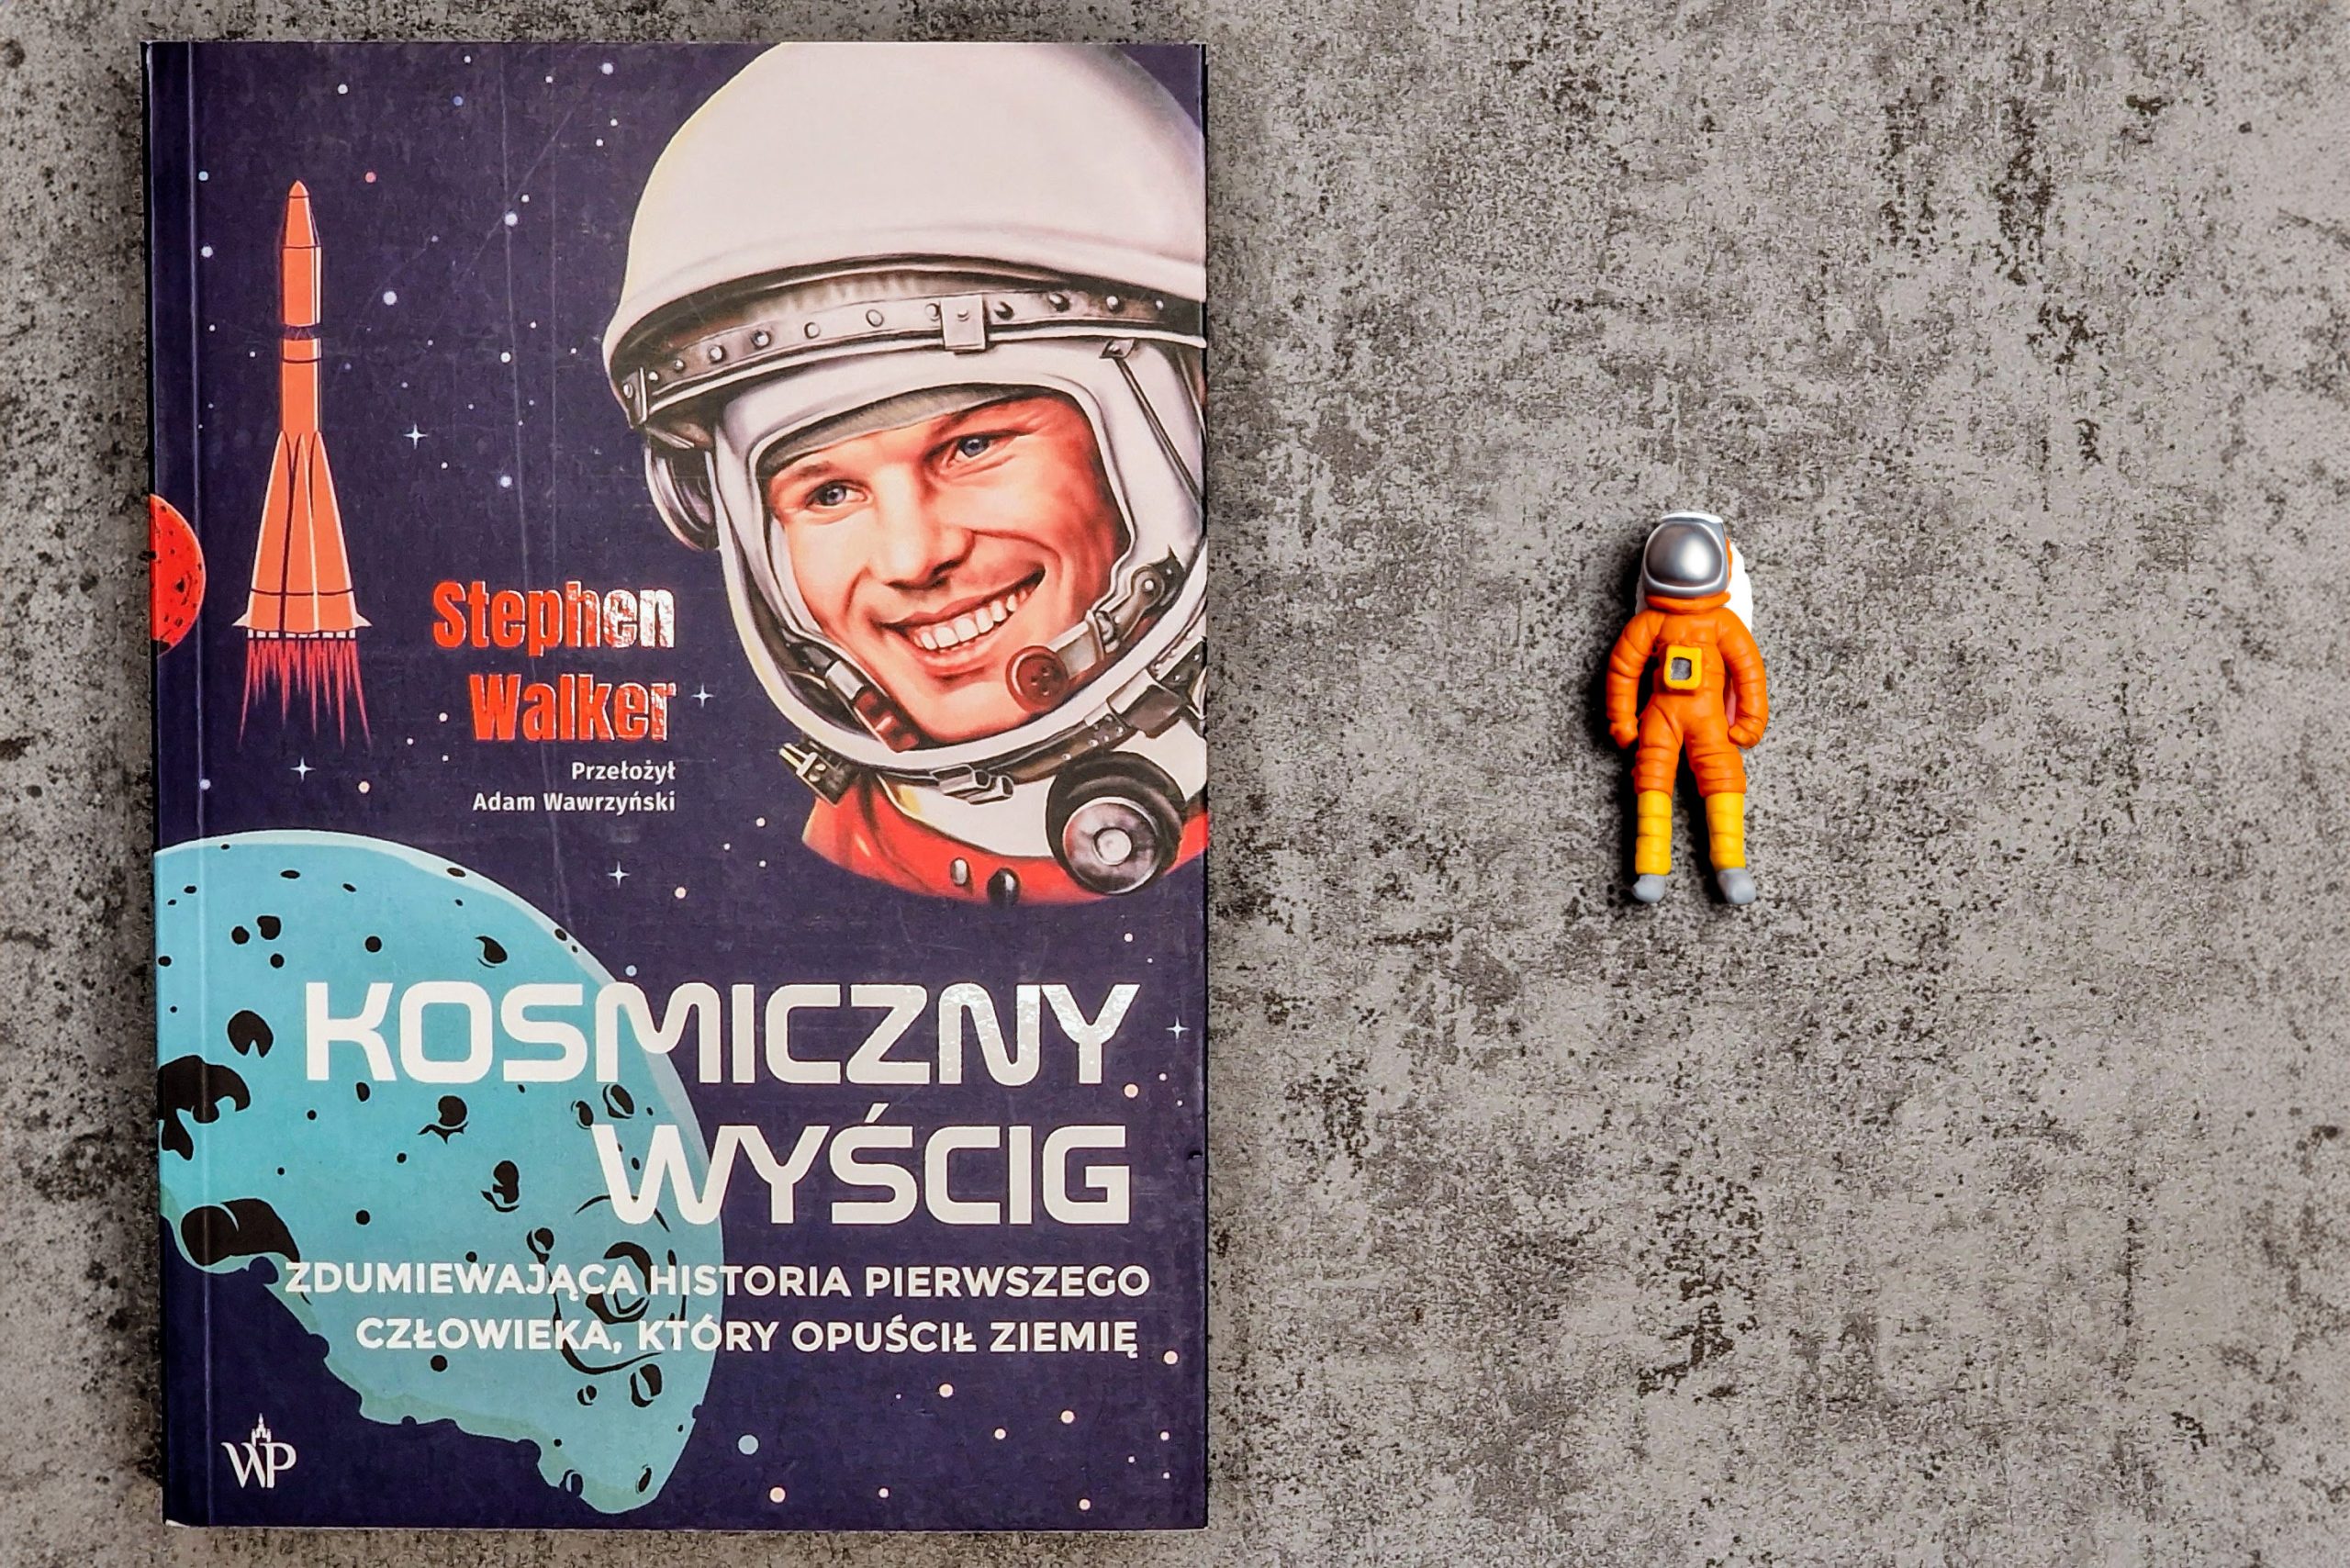 La carrera espacial – El libro de los fuegos artificiales sobre la verdadera «Star Wars» – Mad Science